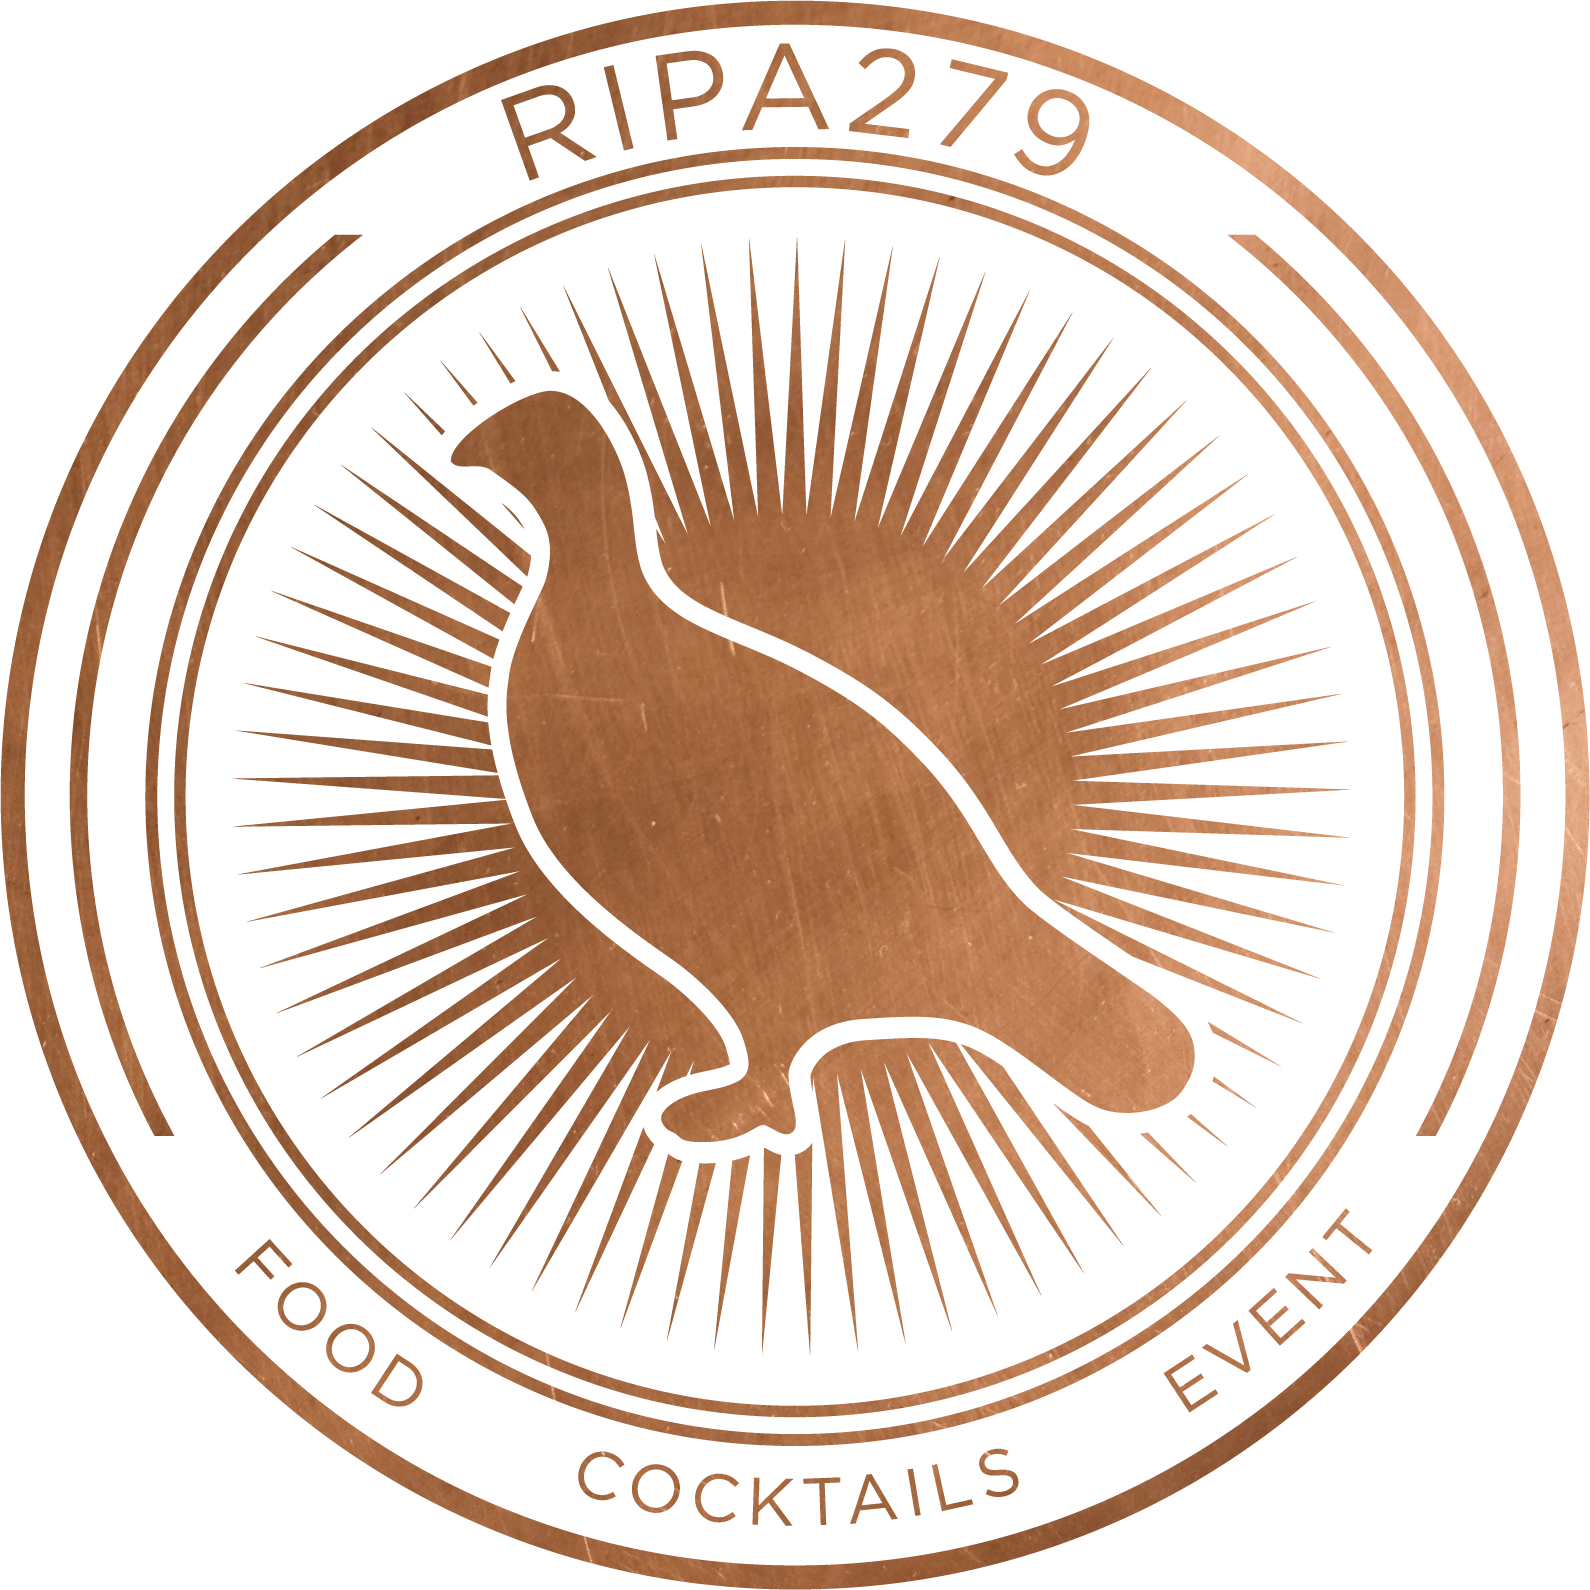 Ripa279